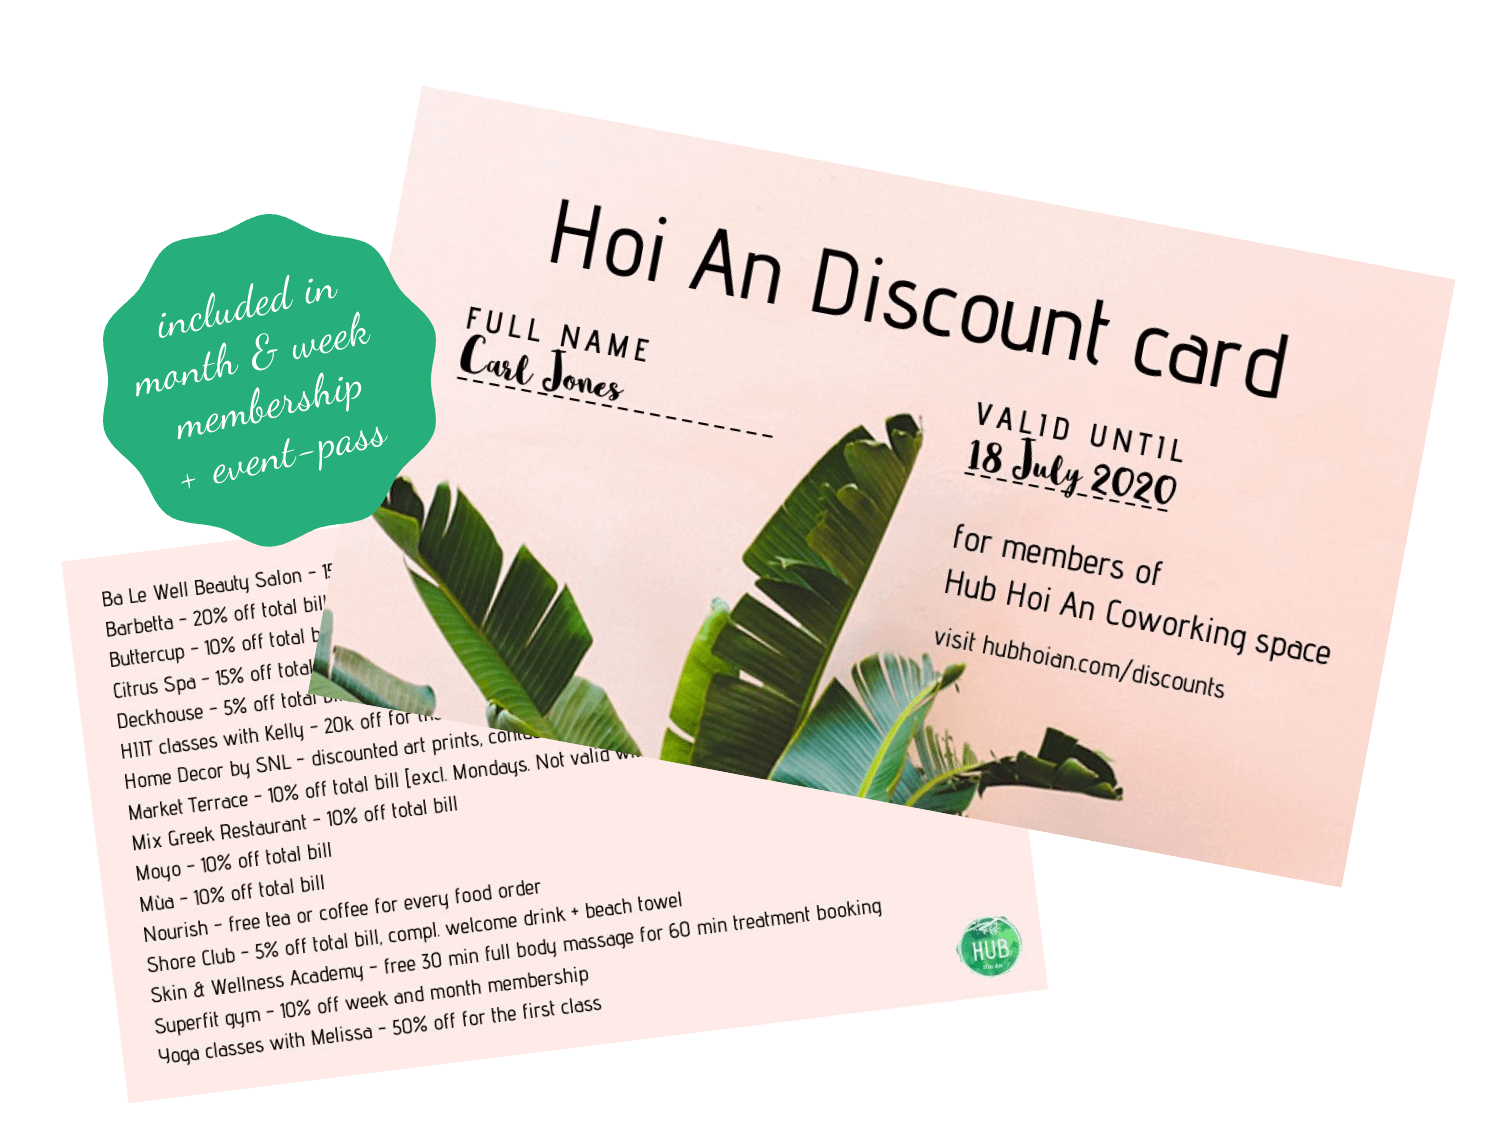 Hub Hoi An Discount Card